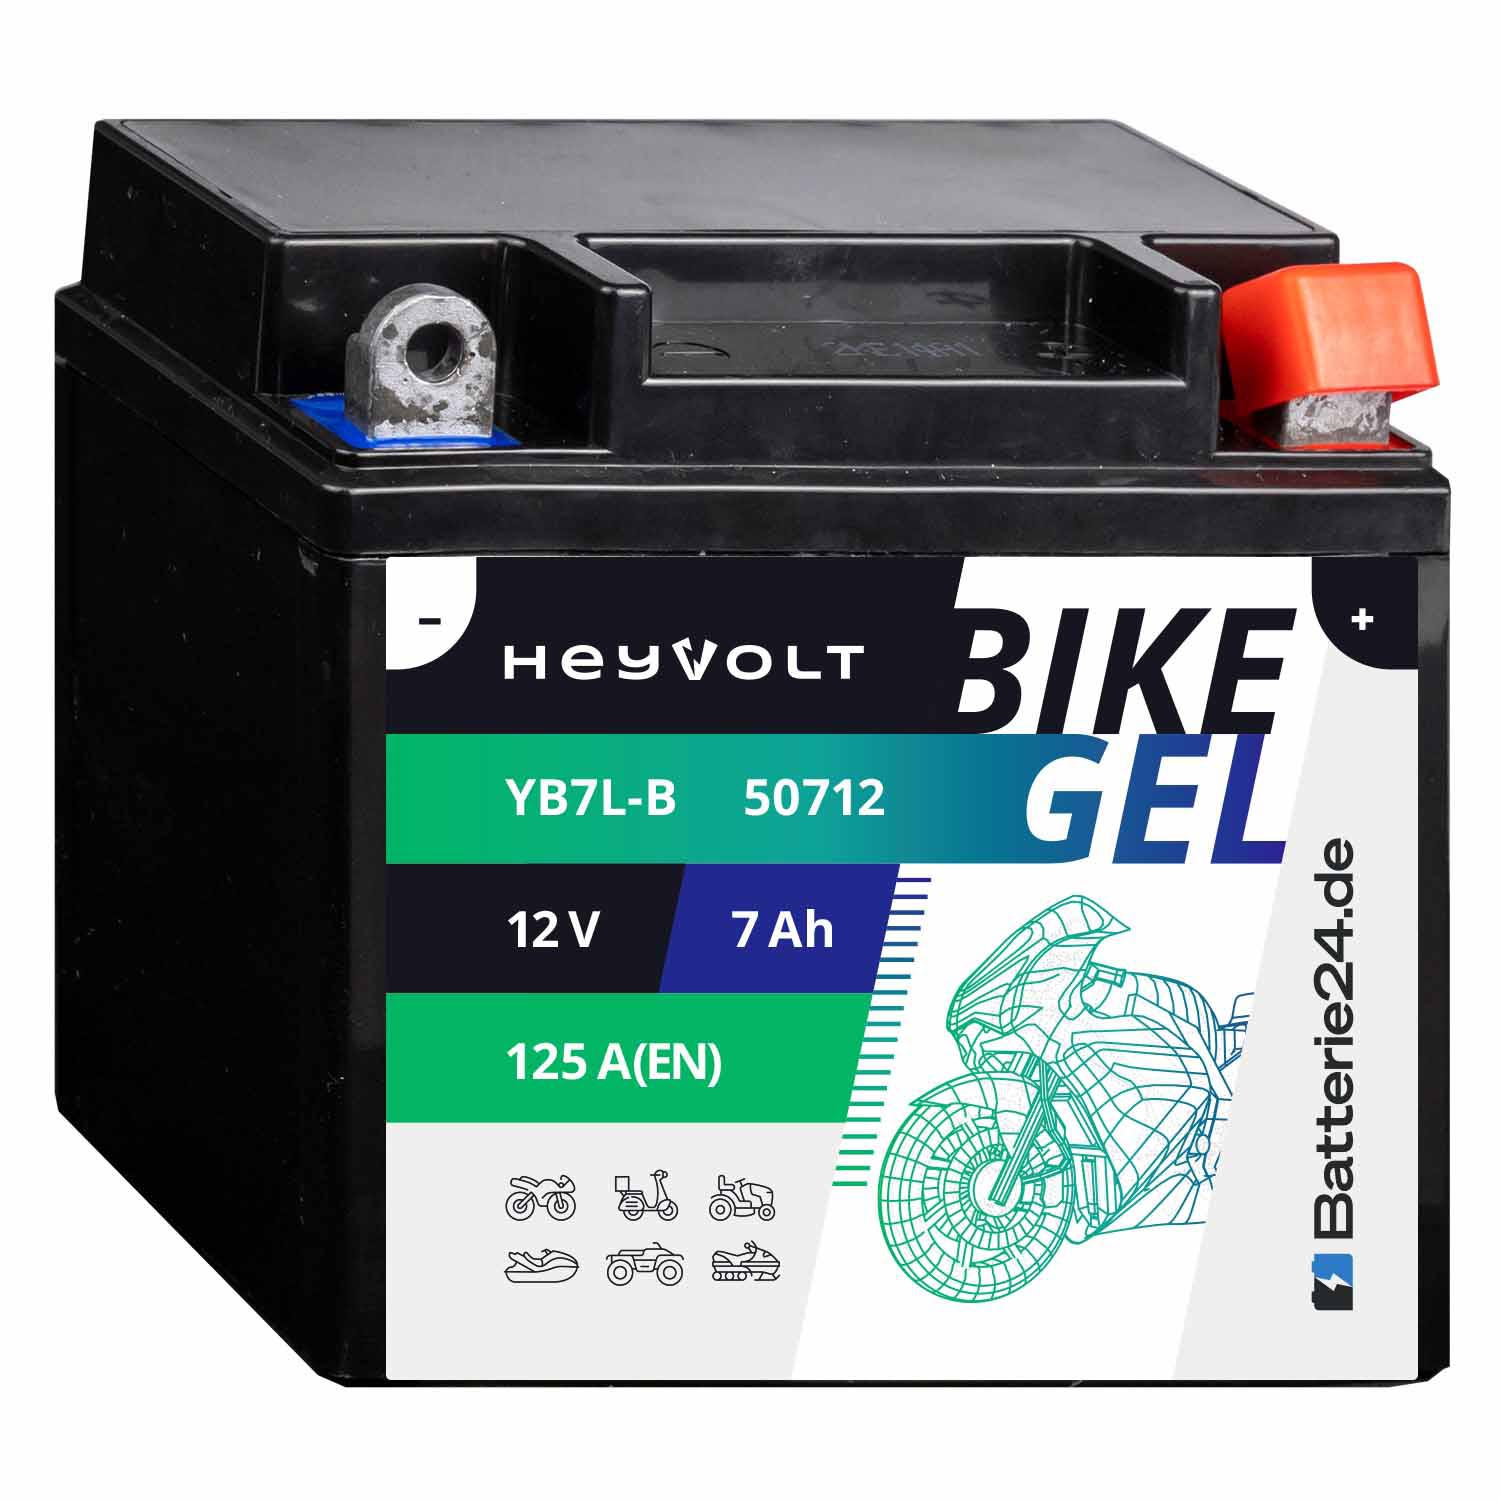 HeyVolt BIKE GEL Motorradbatterie YB7L-B 50712 12V 7Ah